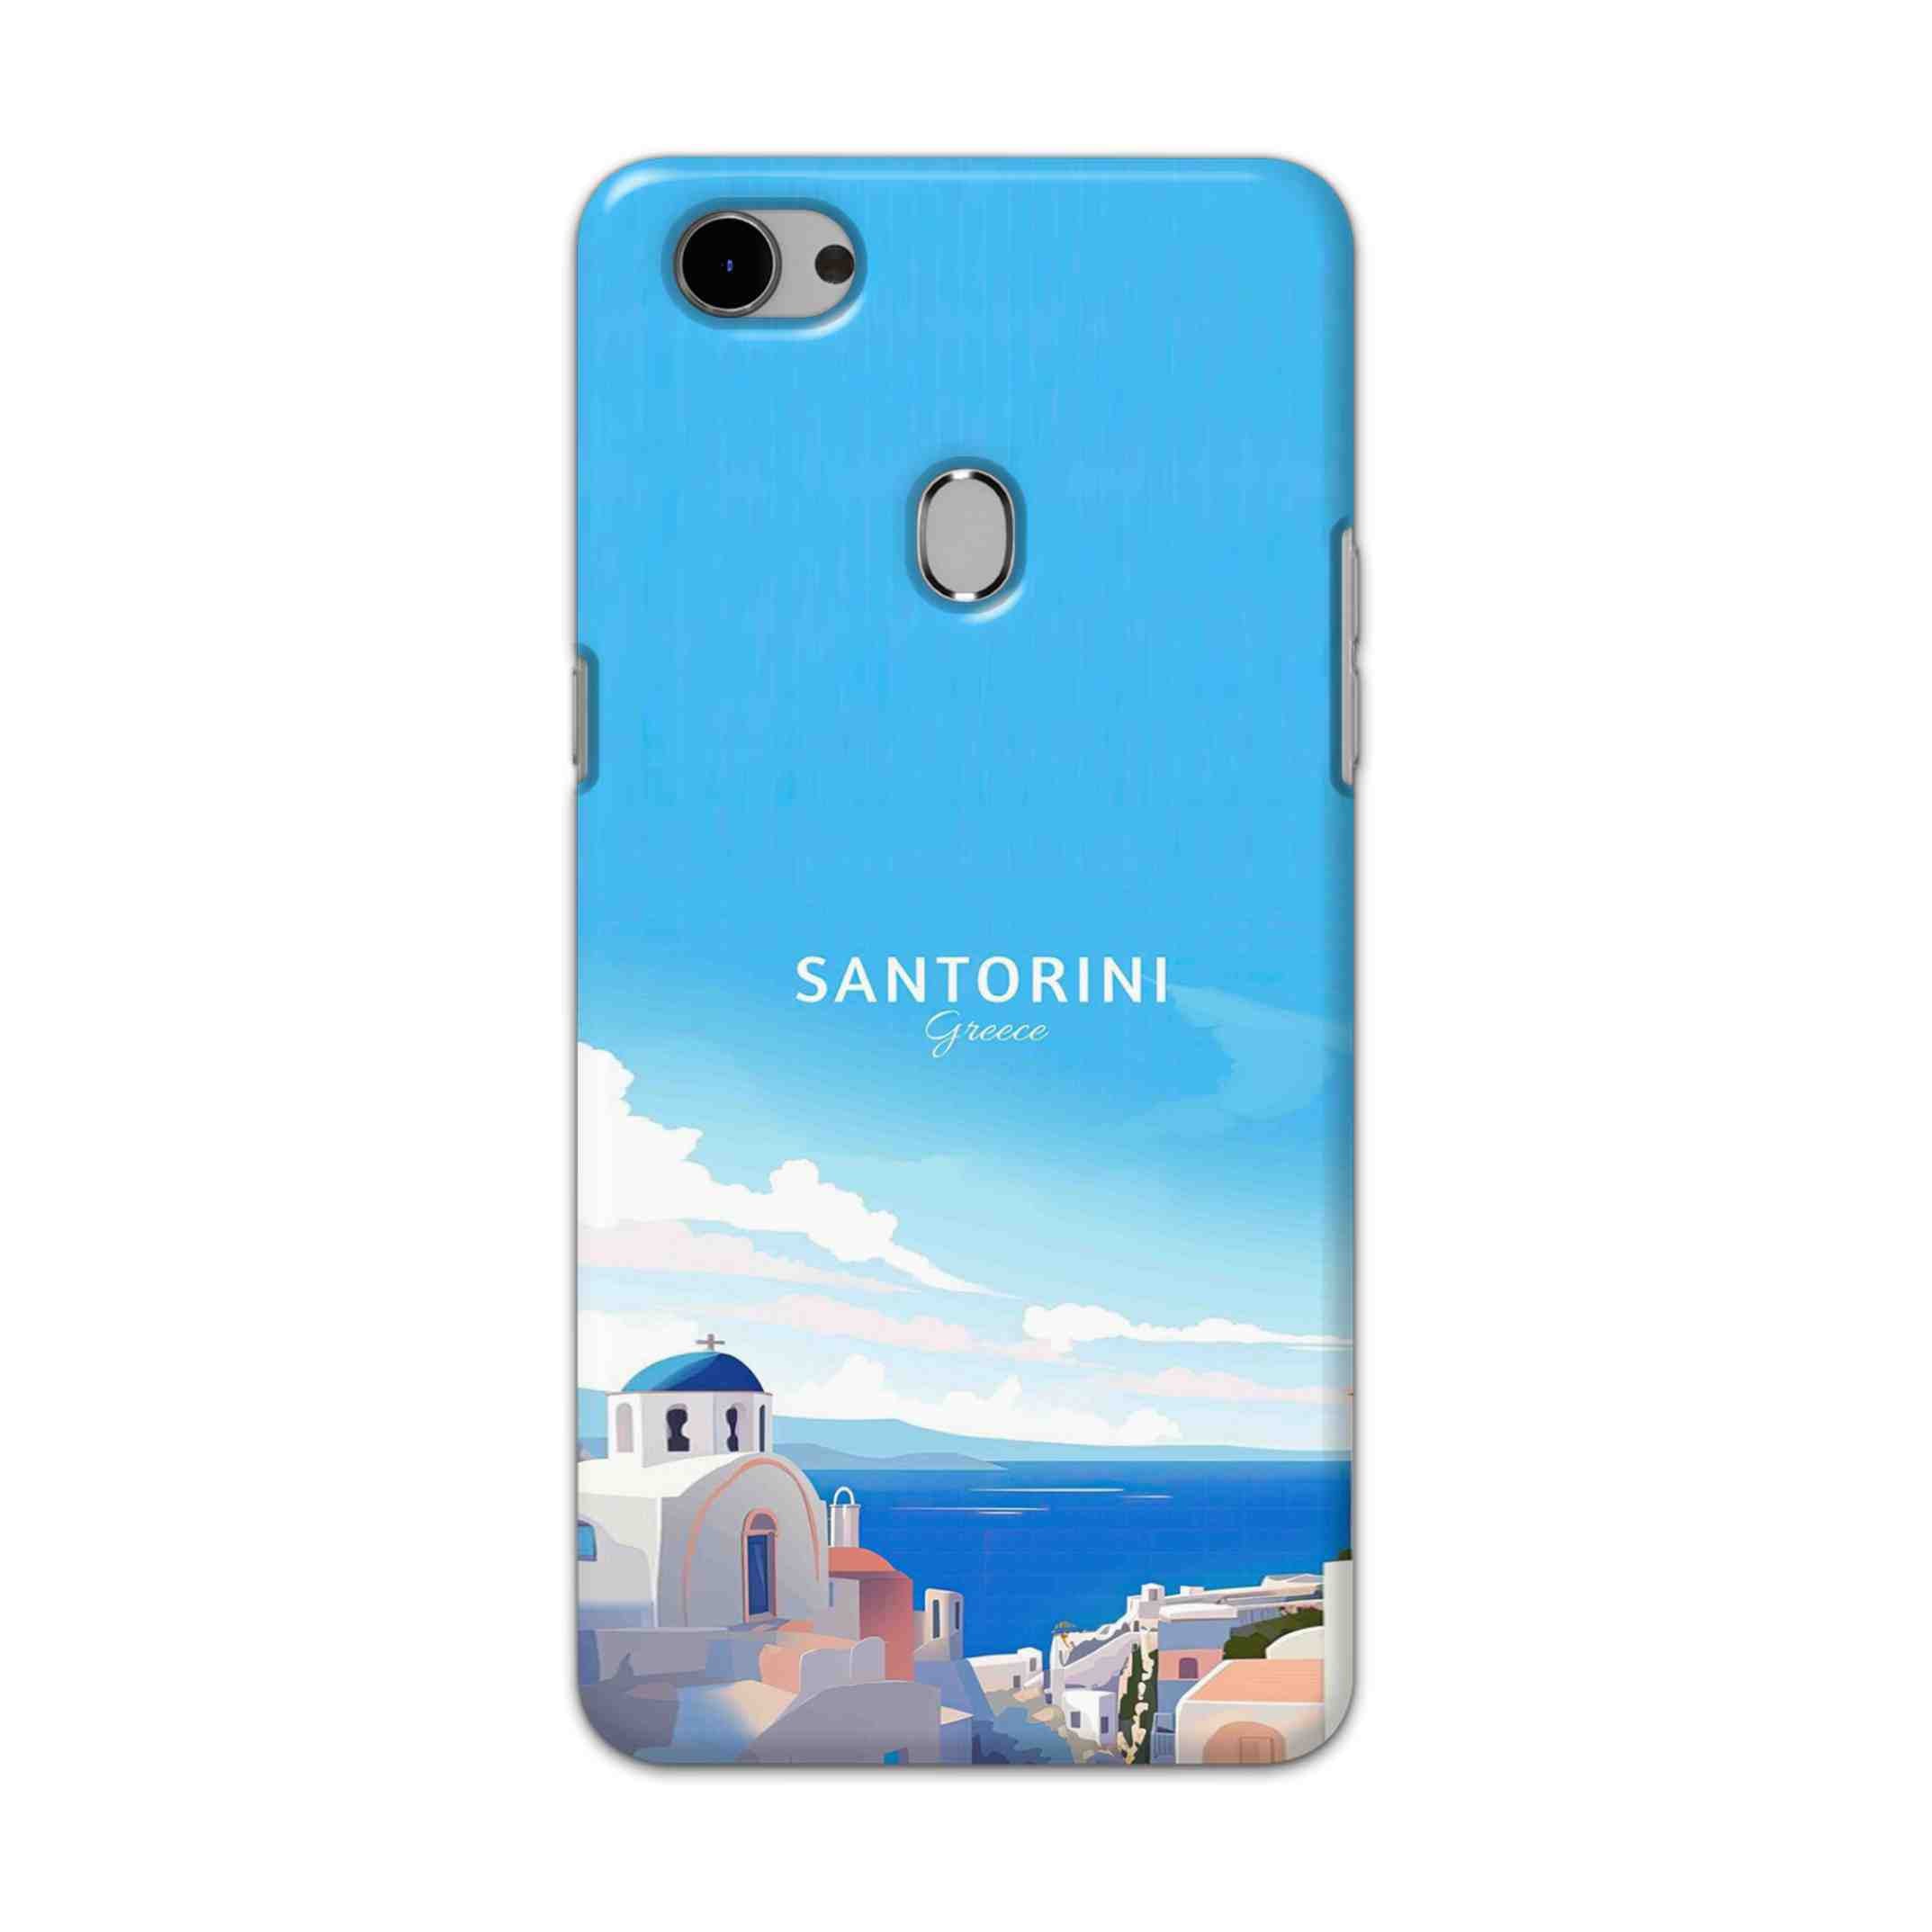 Buy Santorini Hard Back Mobile Phone Case Cover For Oppo F7 Online